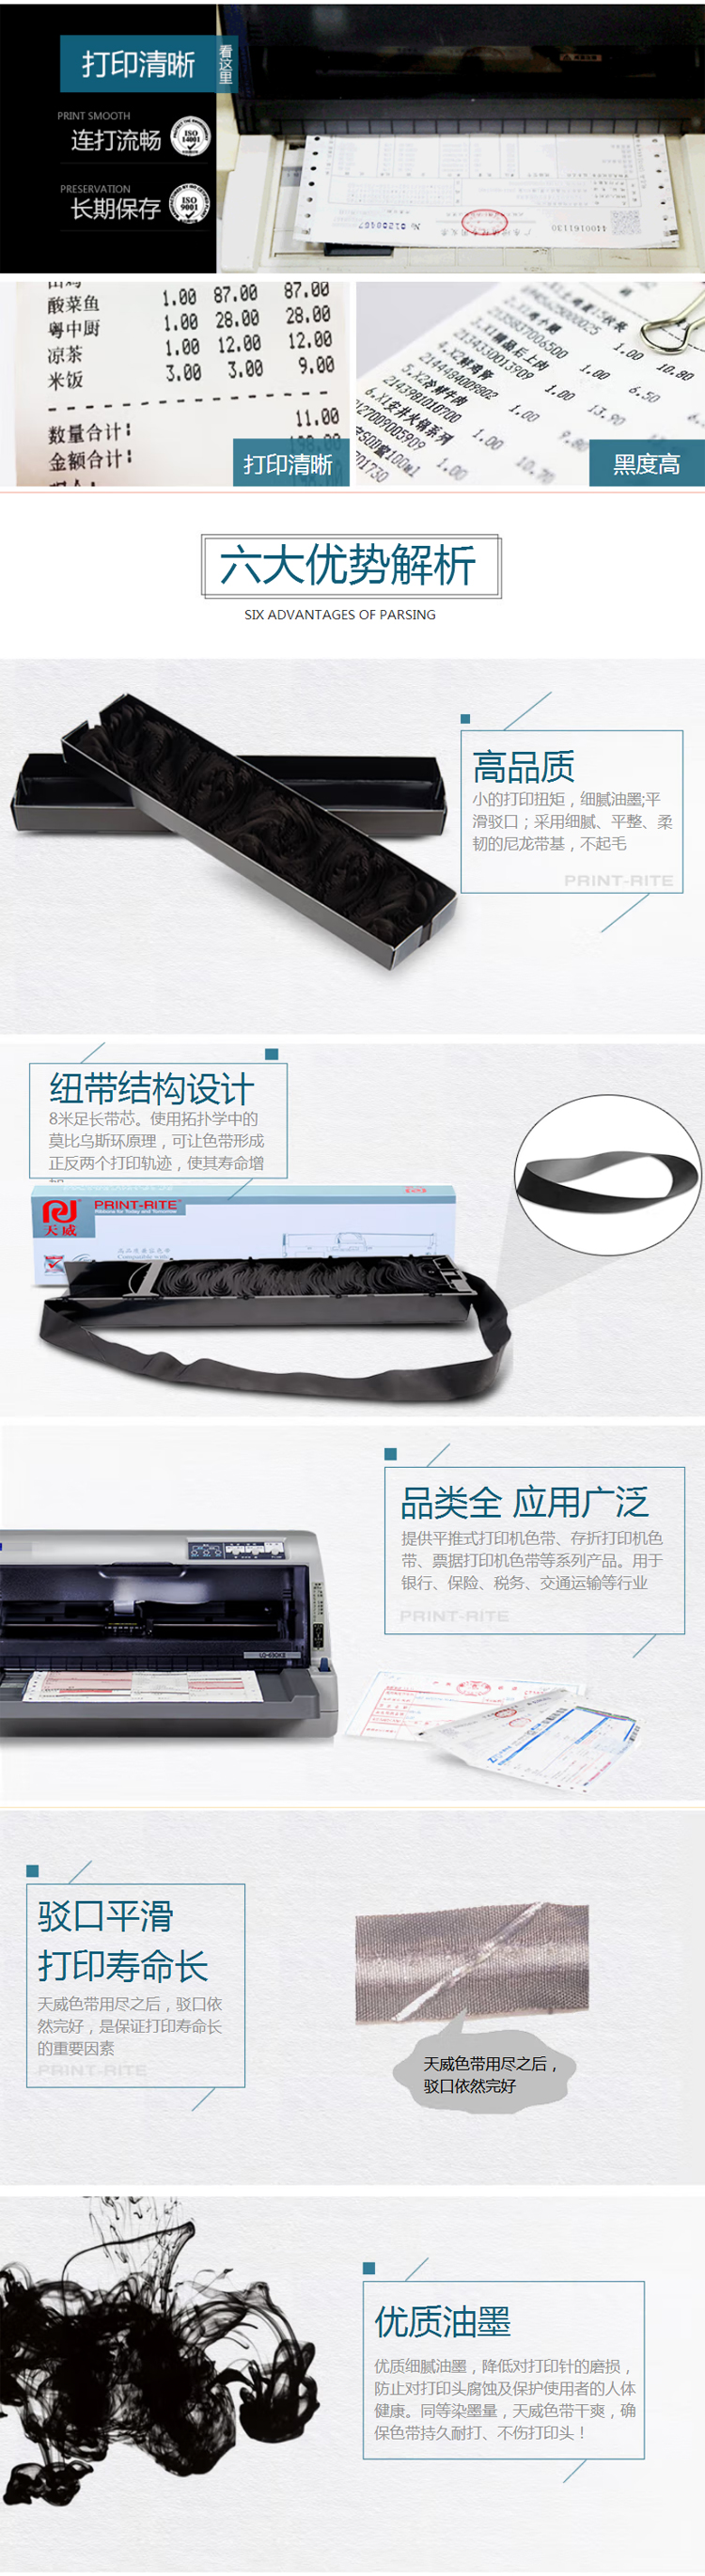 【天威DPK200】天威（PrintRite）专享版-色带芯-DPK200适用于FUJITSU-DP_02.jpg